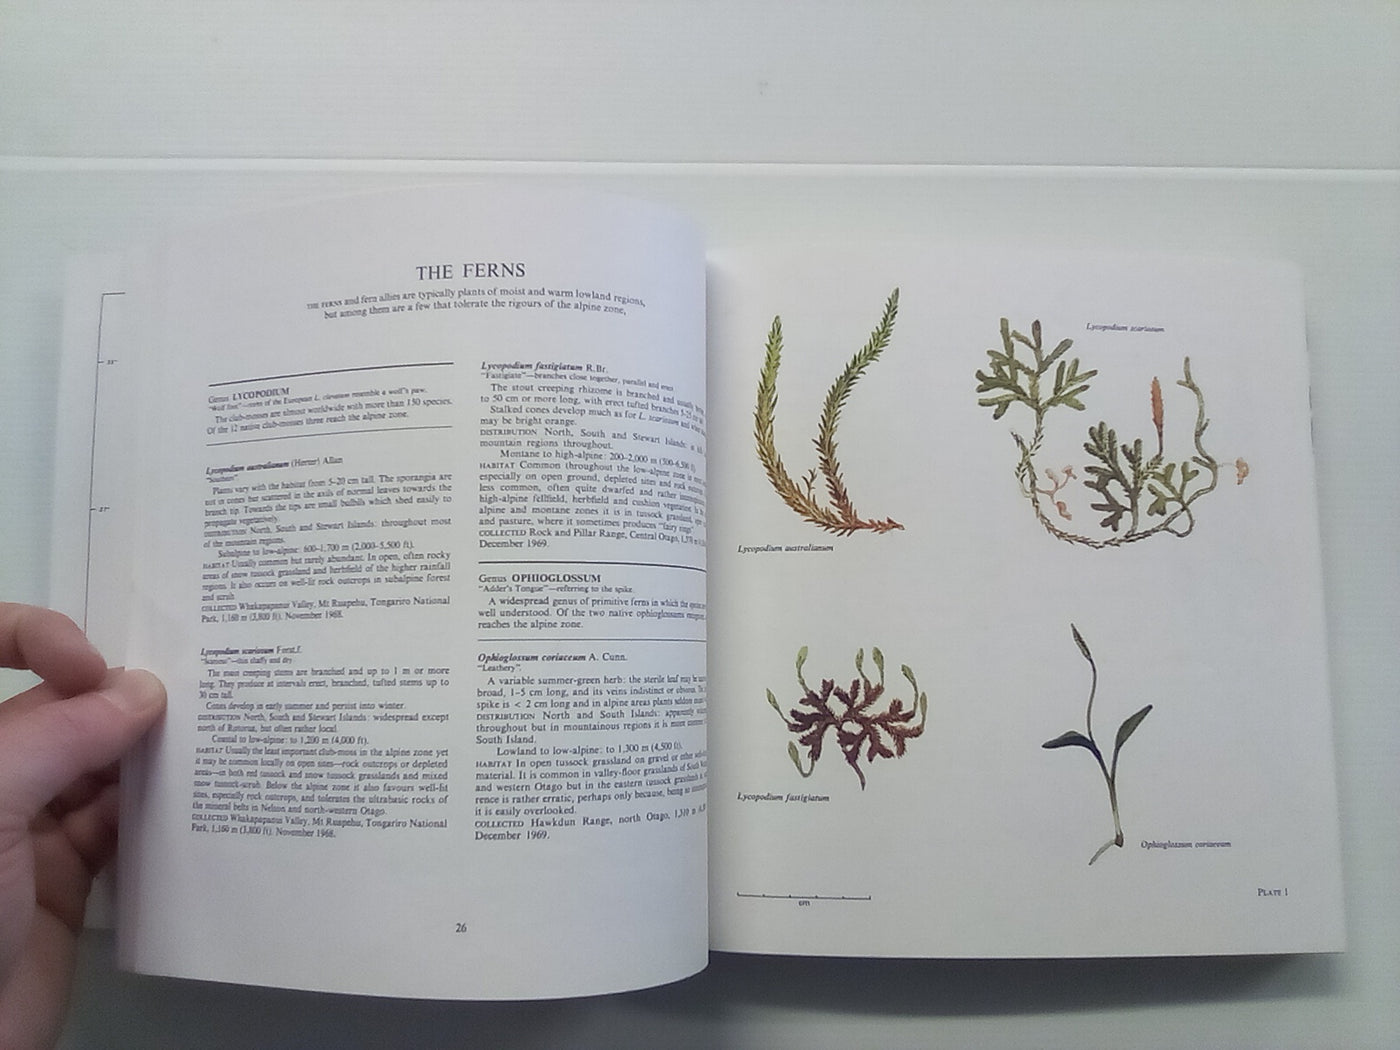 New Zealand Alpine Plants (1979) by A.F. Mark & N.M Adams